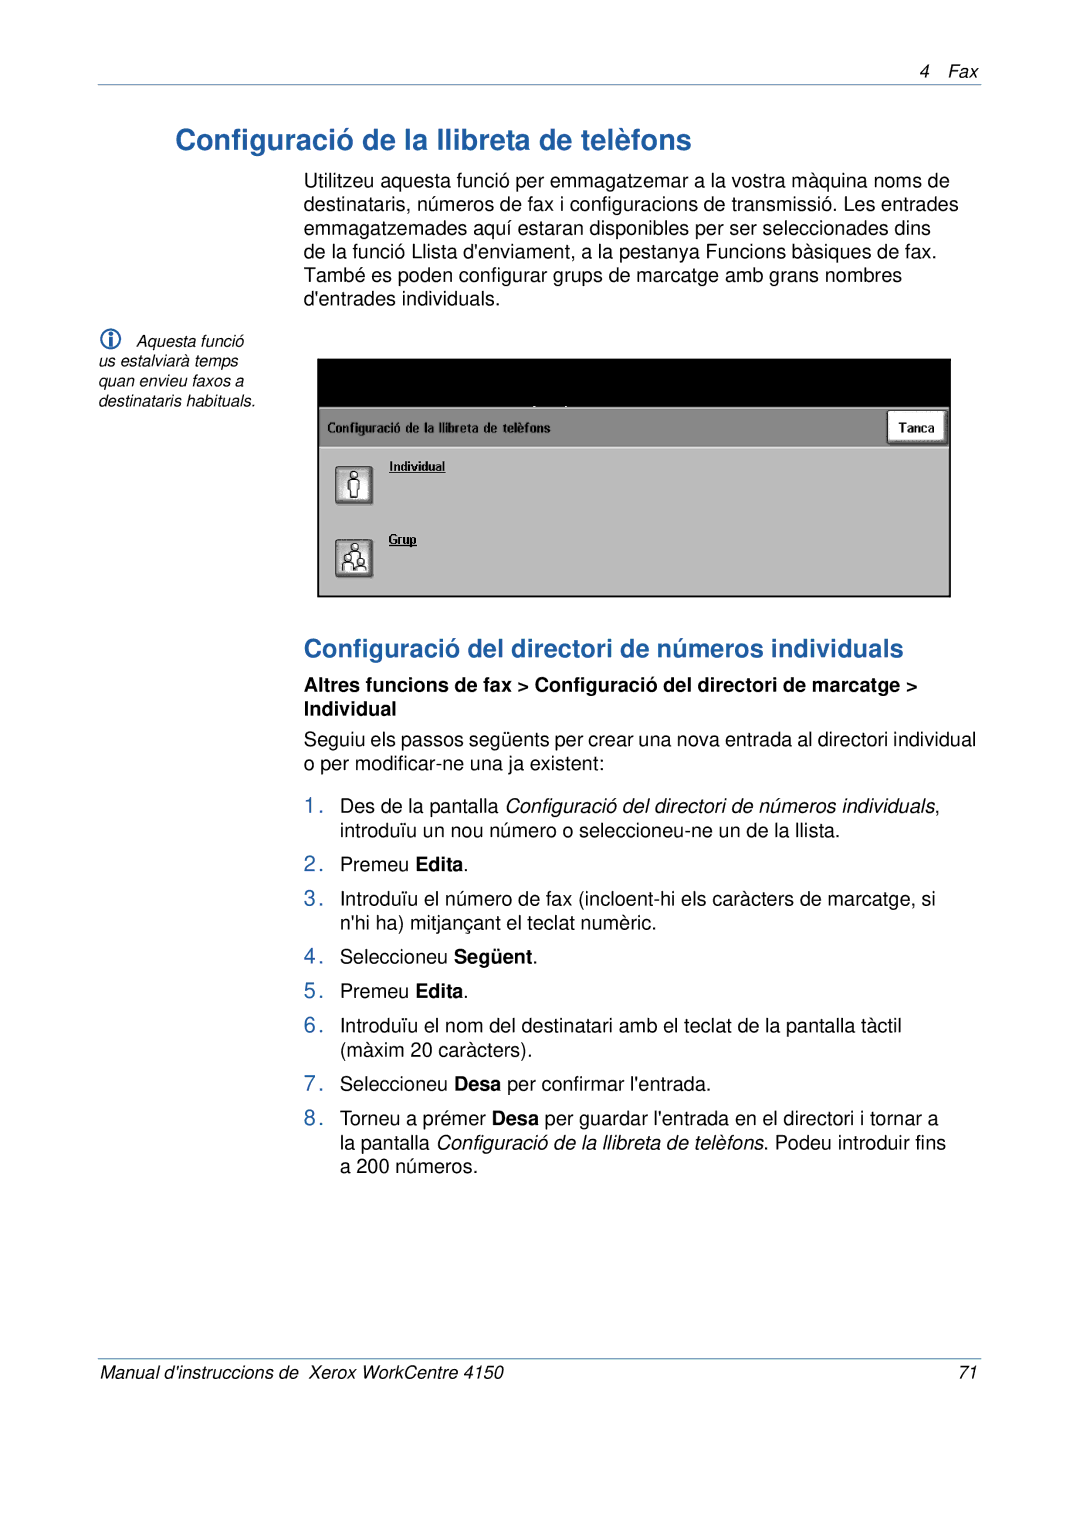 Xerox 5.0 24.03.06 manual Configuració de la llibreta de telèfons, Configuració del directori de números individuals 